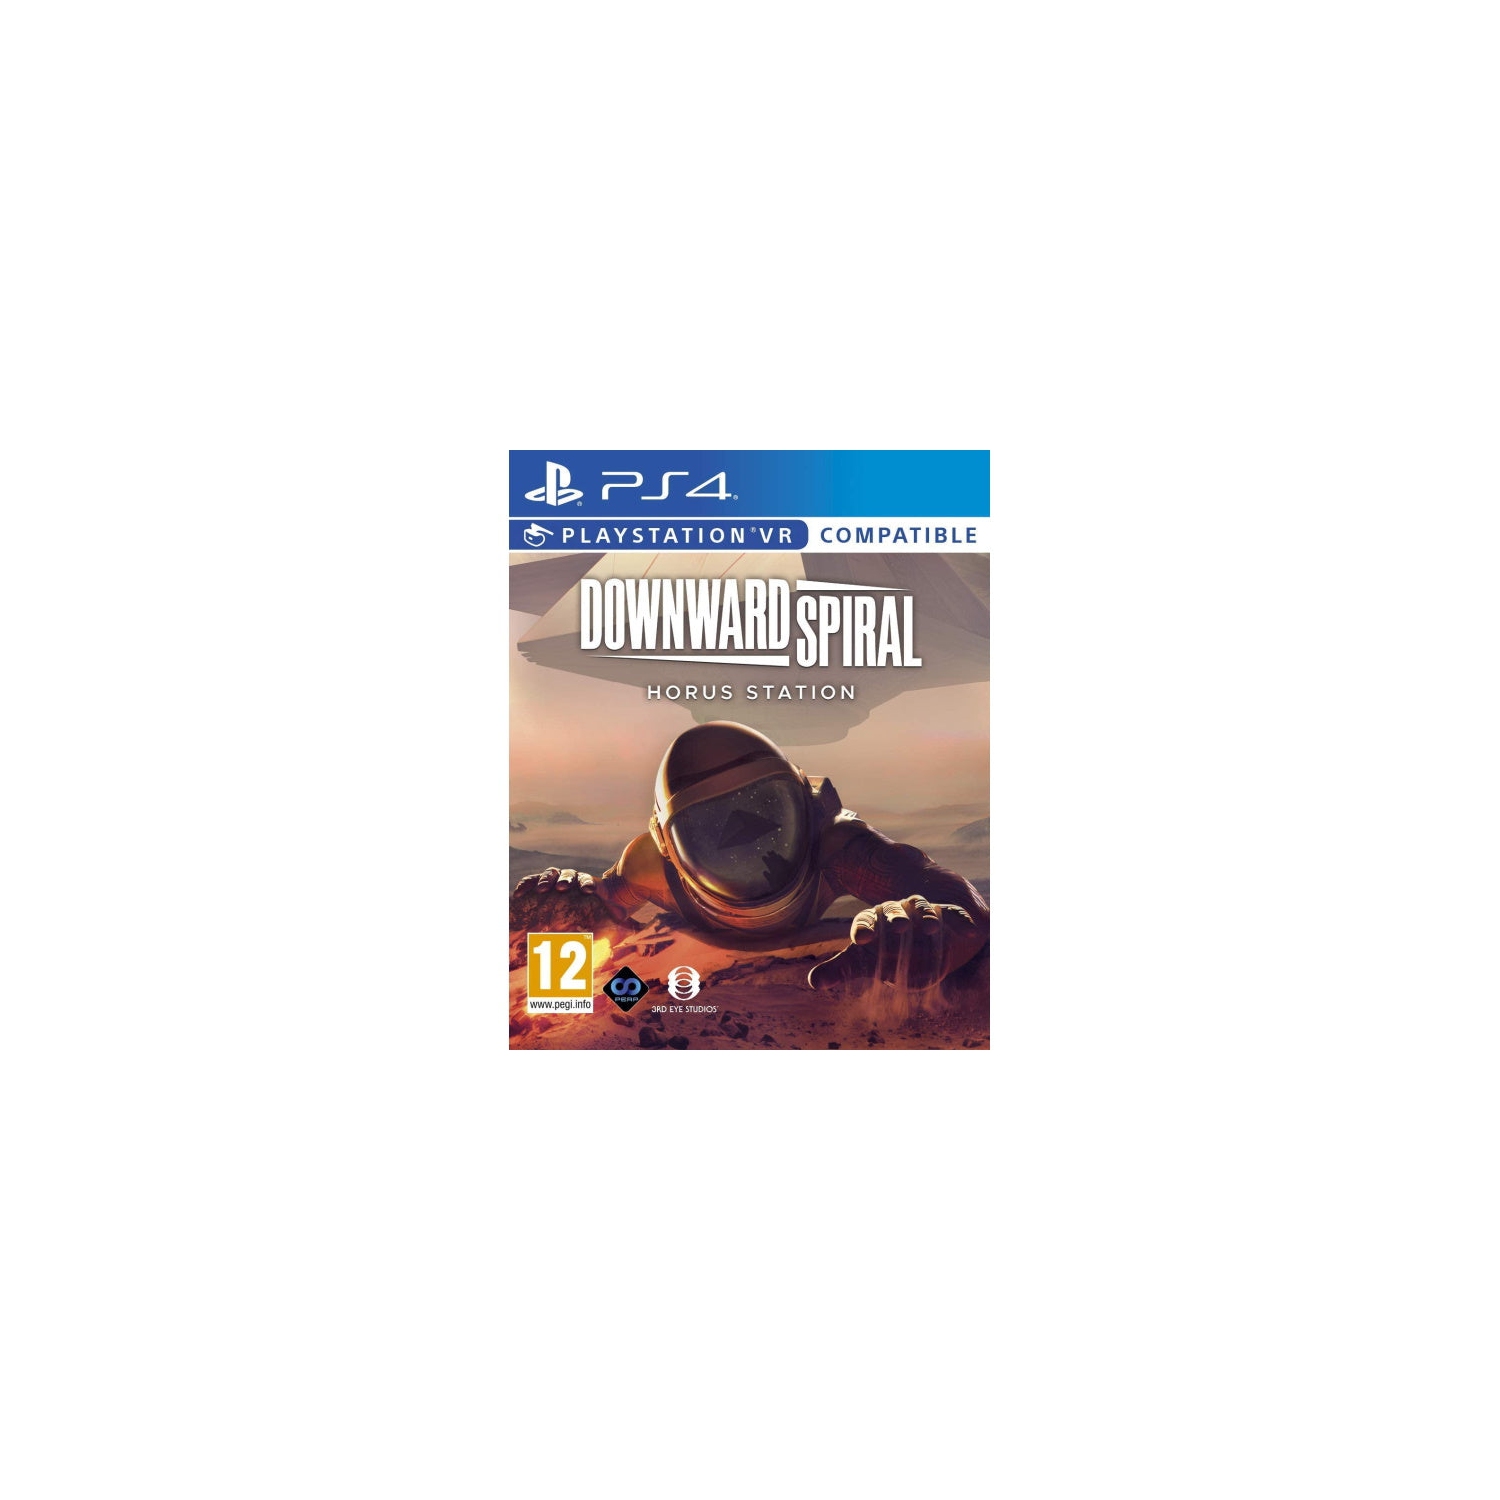 Downward Spiral: Horus Station [PlayStation 4 - VR Compatible]